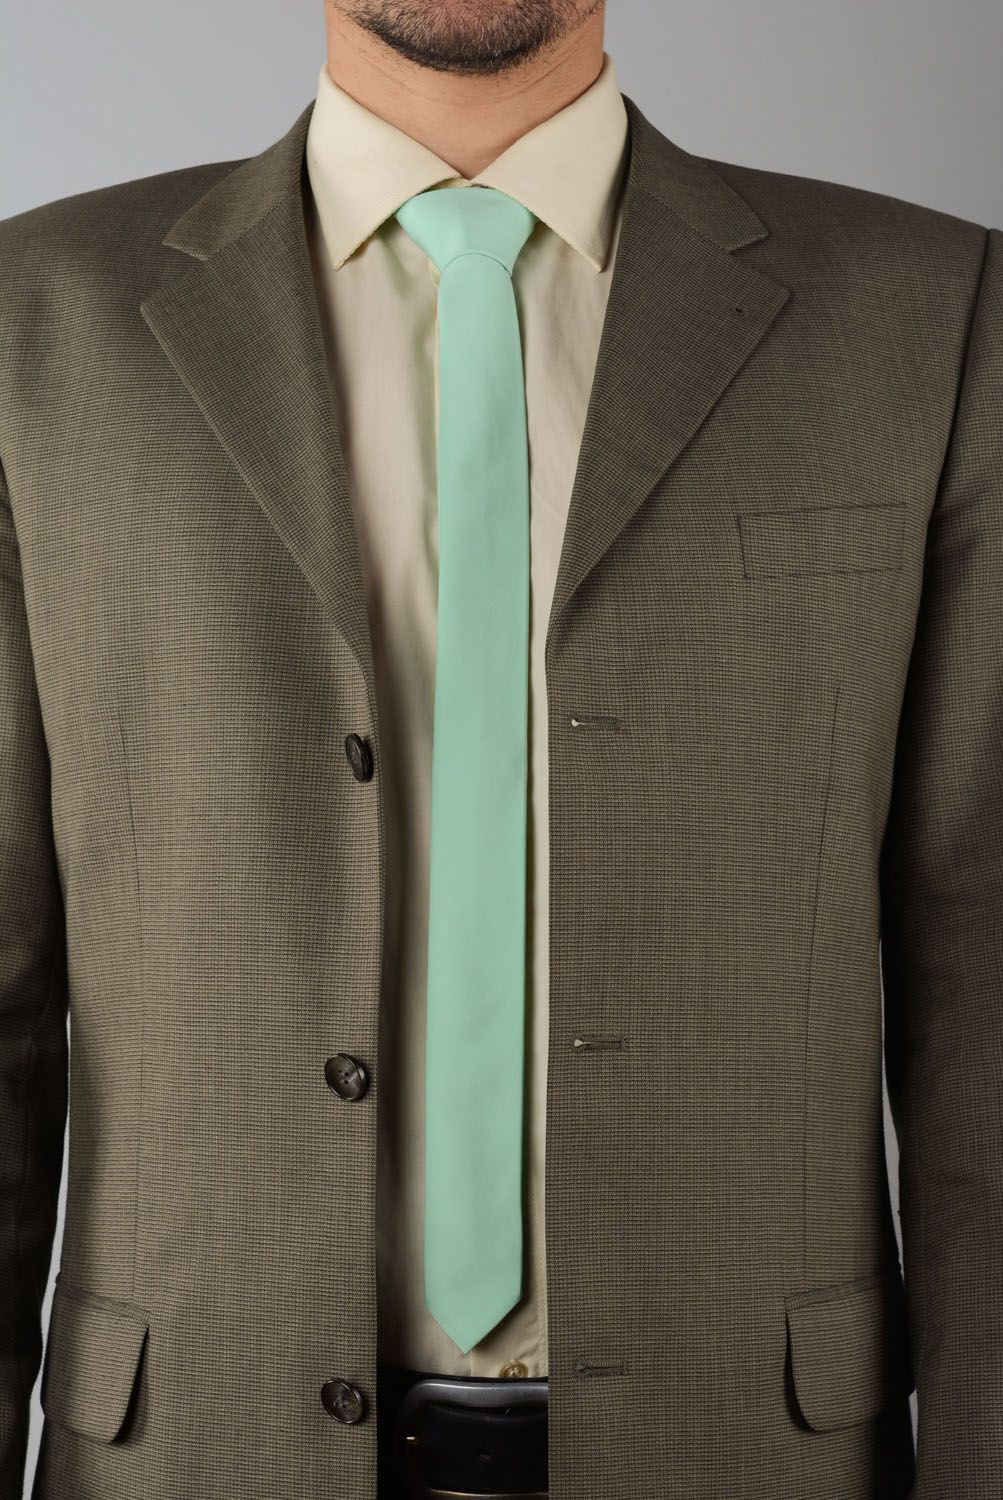 Cravate en lin couleur menthe faite main photo 1